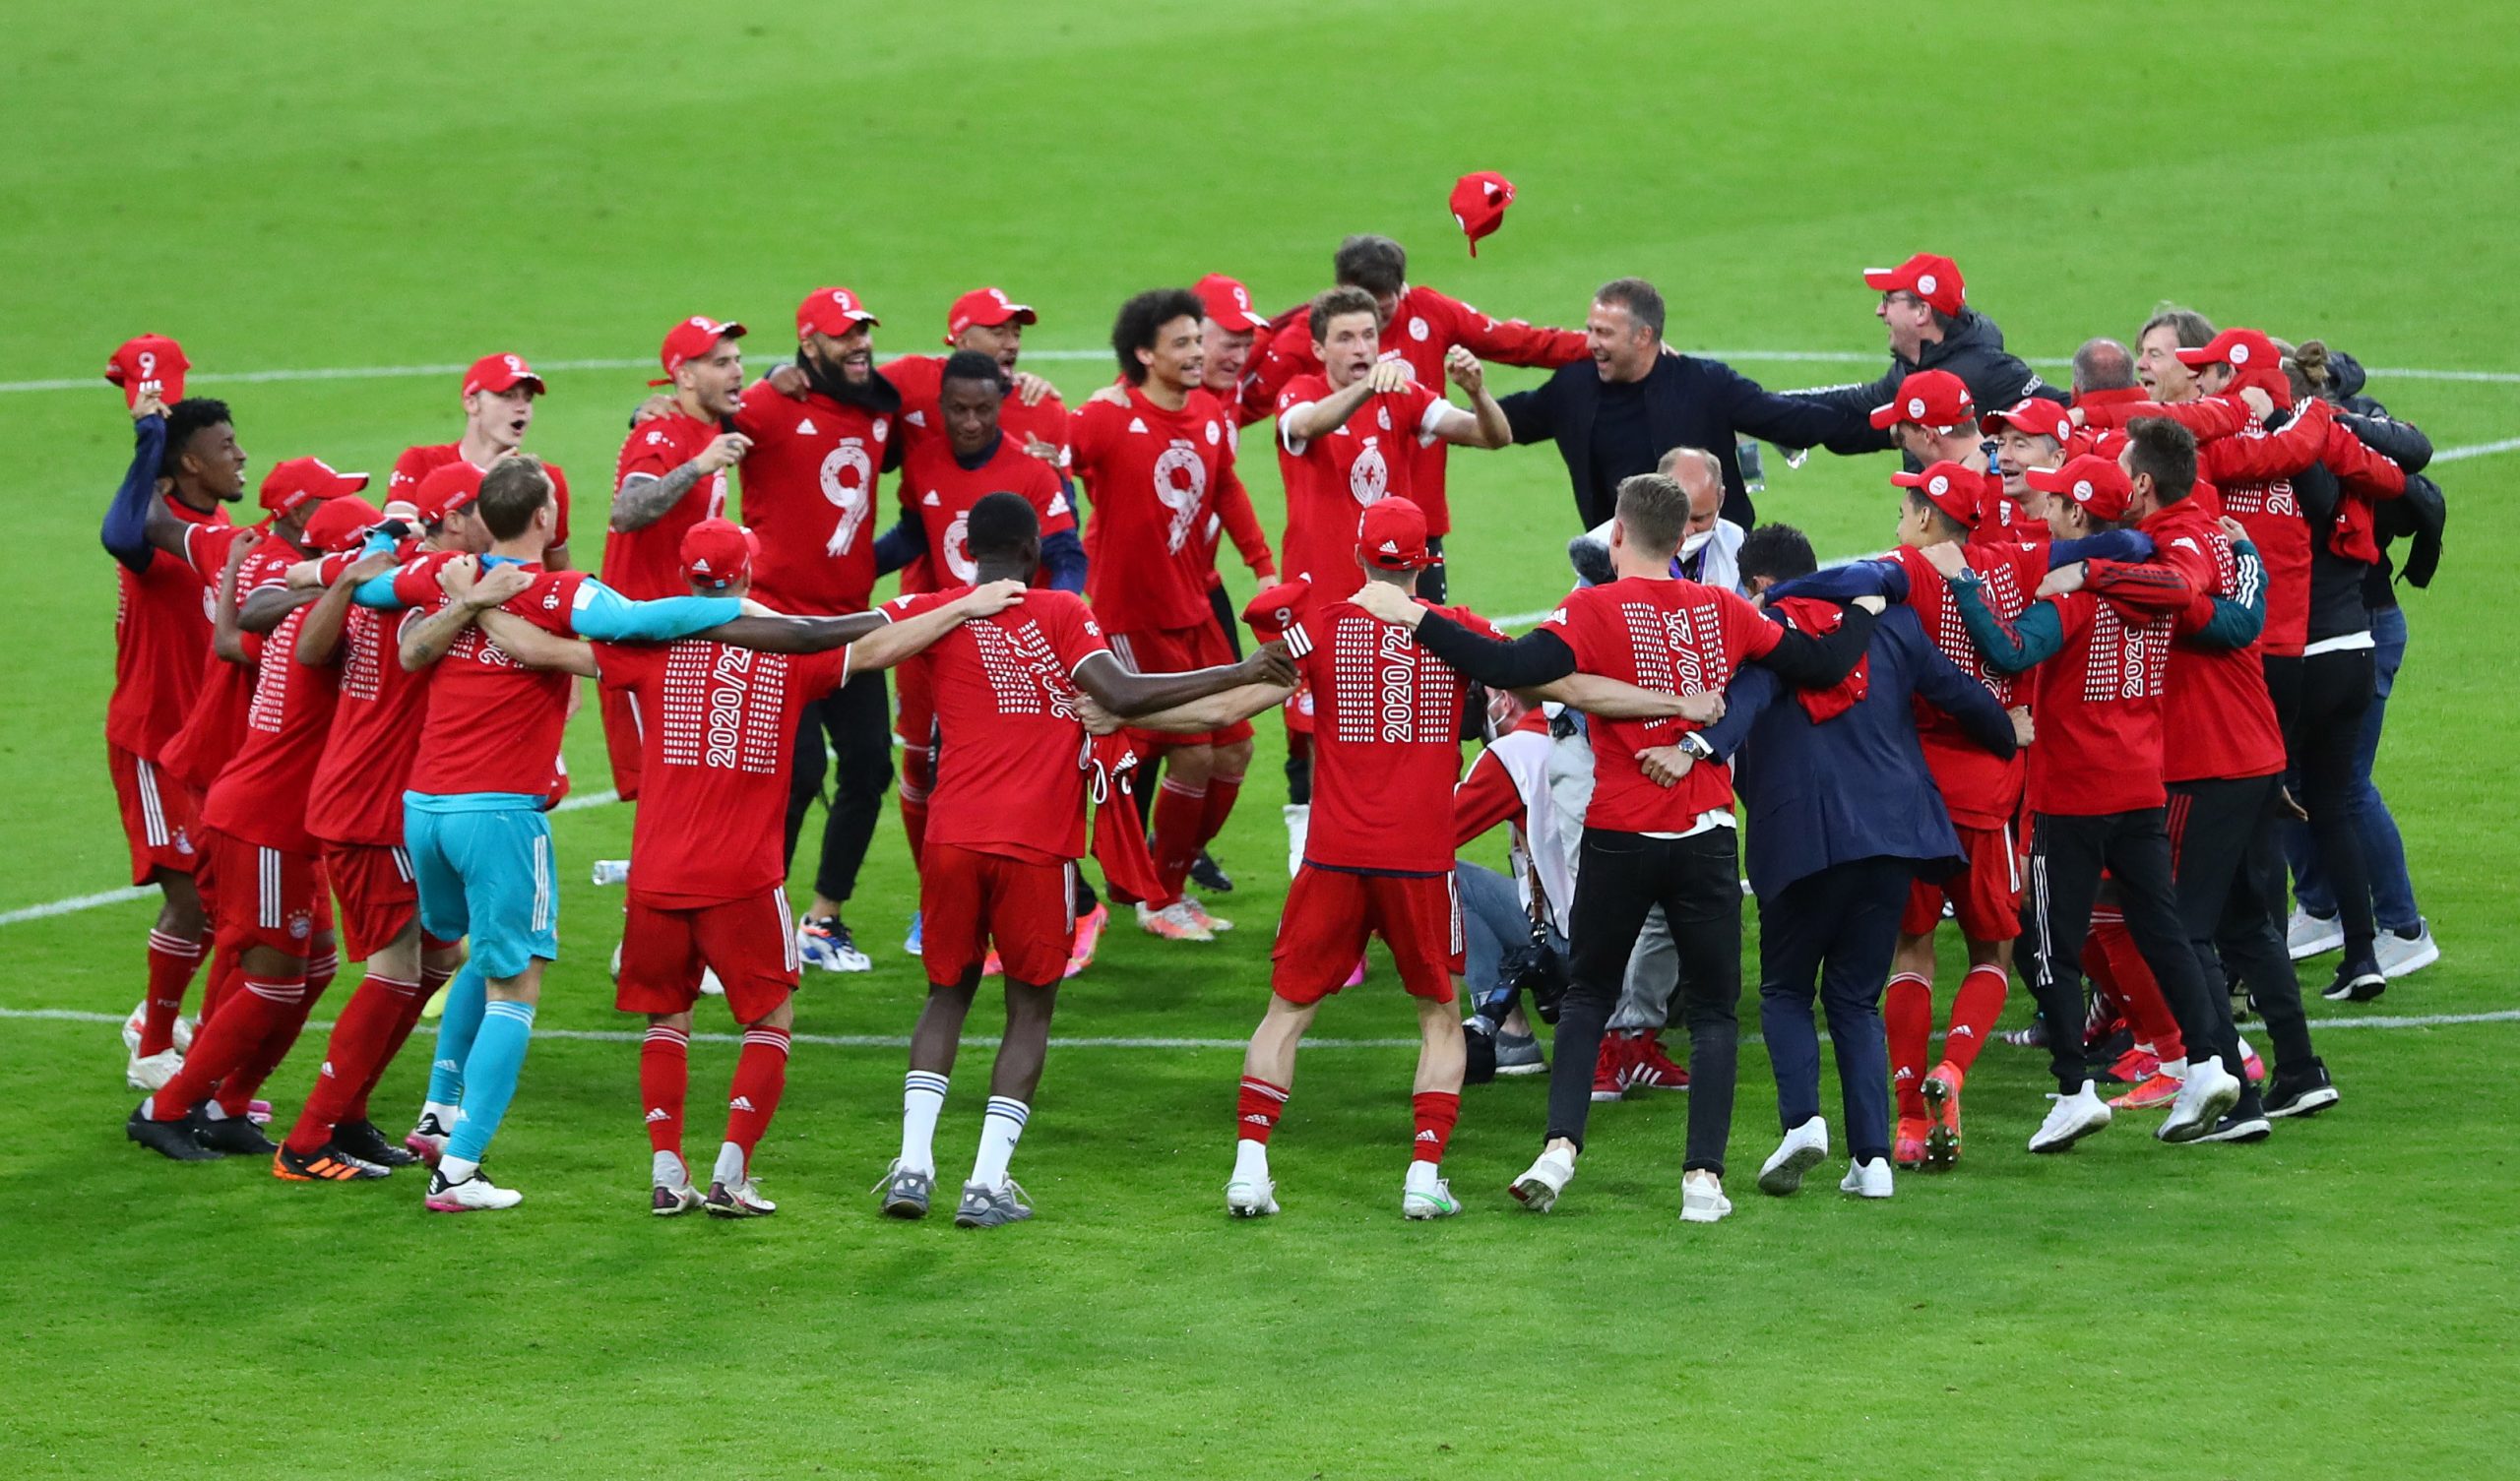 Los jugadores del Bayern de Múnich celebran tras obtener el título de campeón de la Bundesliga, en el Estadio Allianz Arena, Alemania - May 8, 2021 Pool vía REUTERS